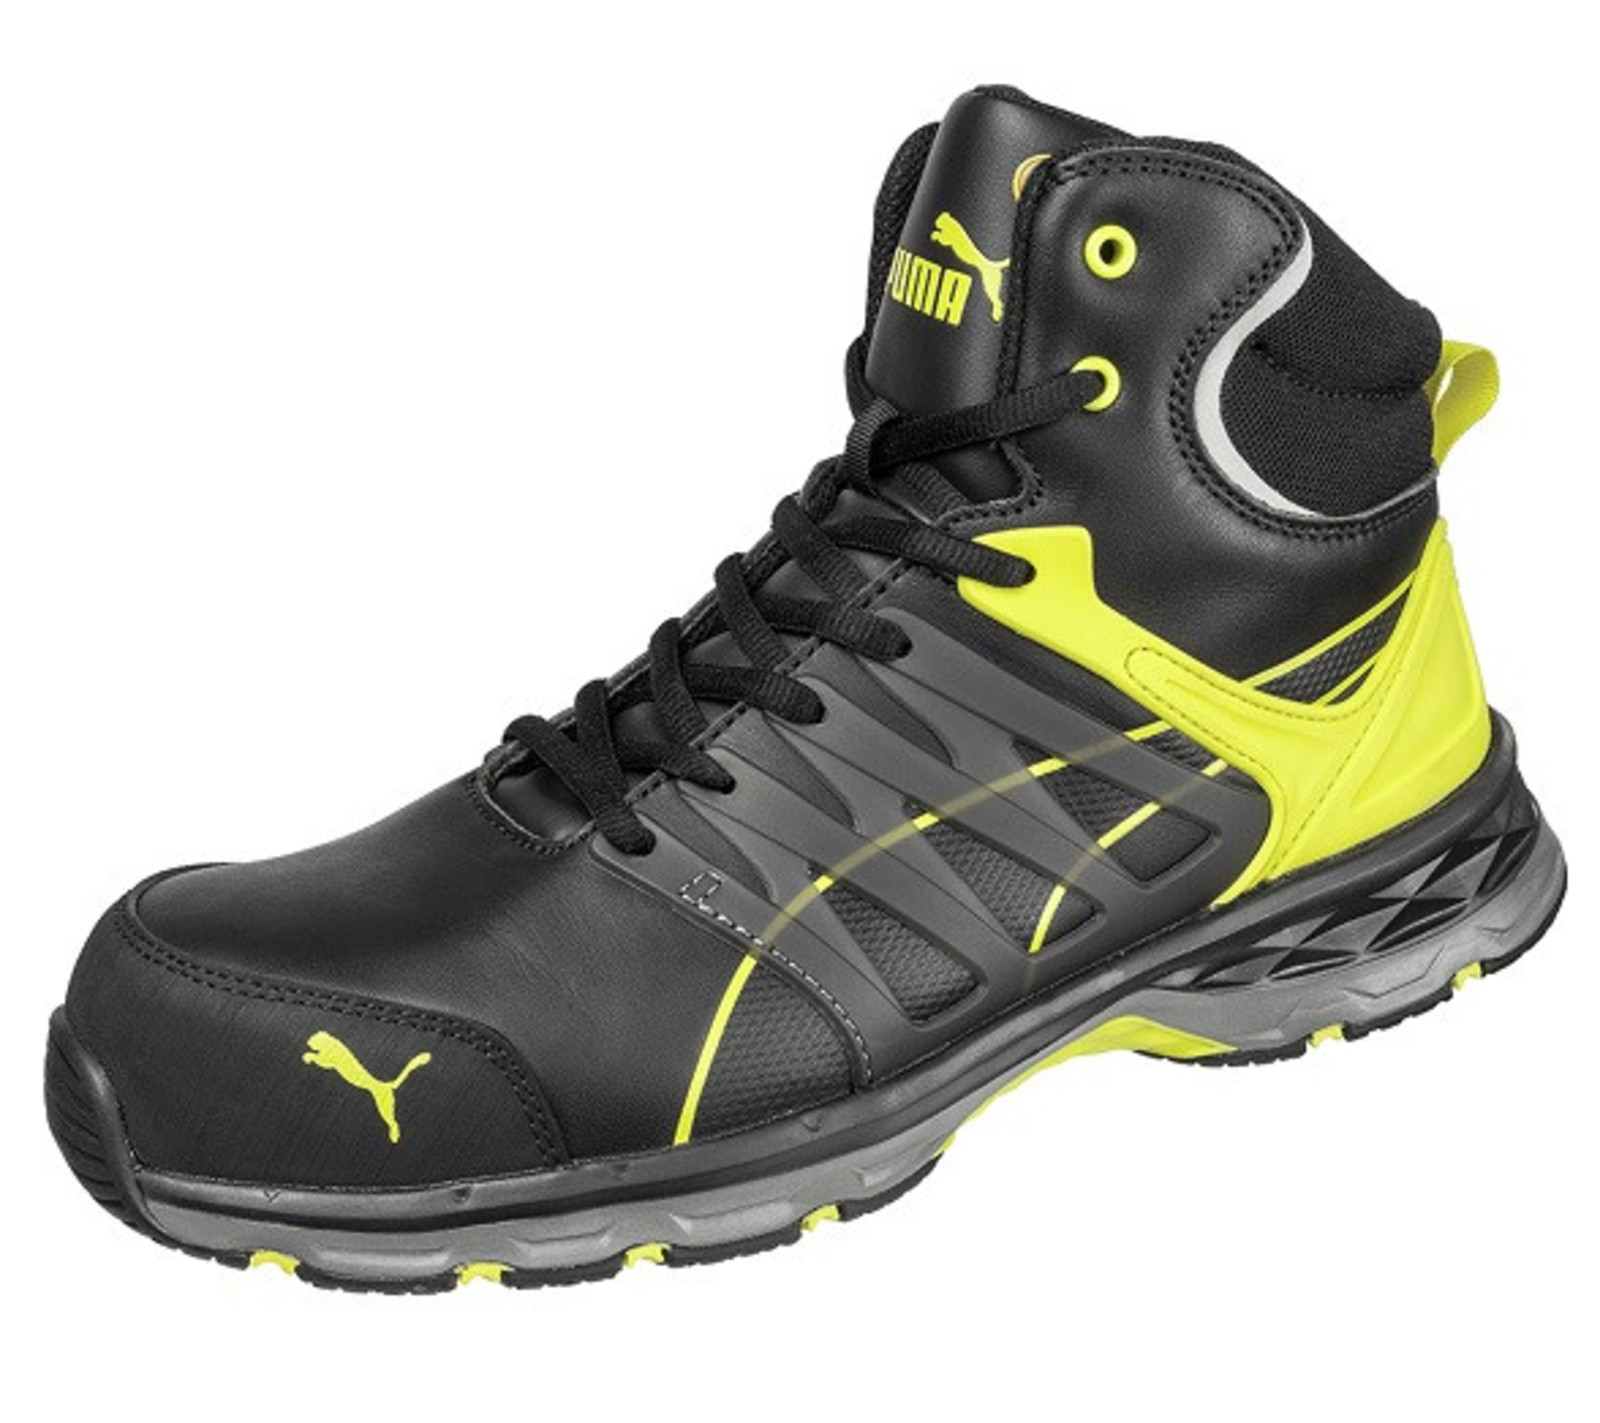 Bezpečnostná členková obuv Puma Velocity 2.0 S3 SRC - veľkosť: 43, farba: čierna/žltá